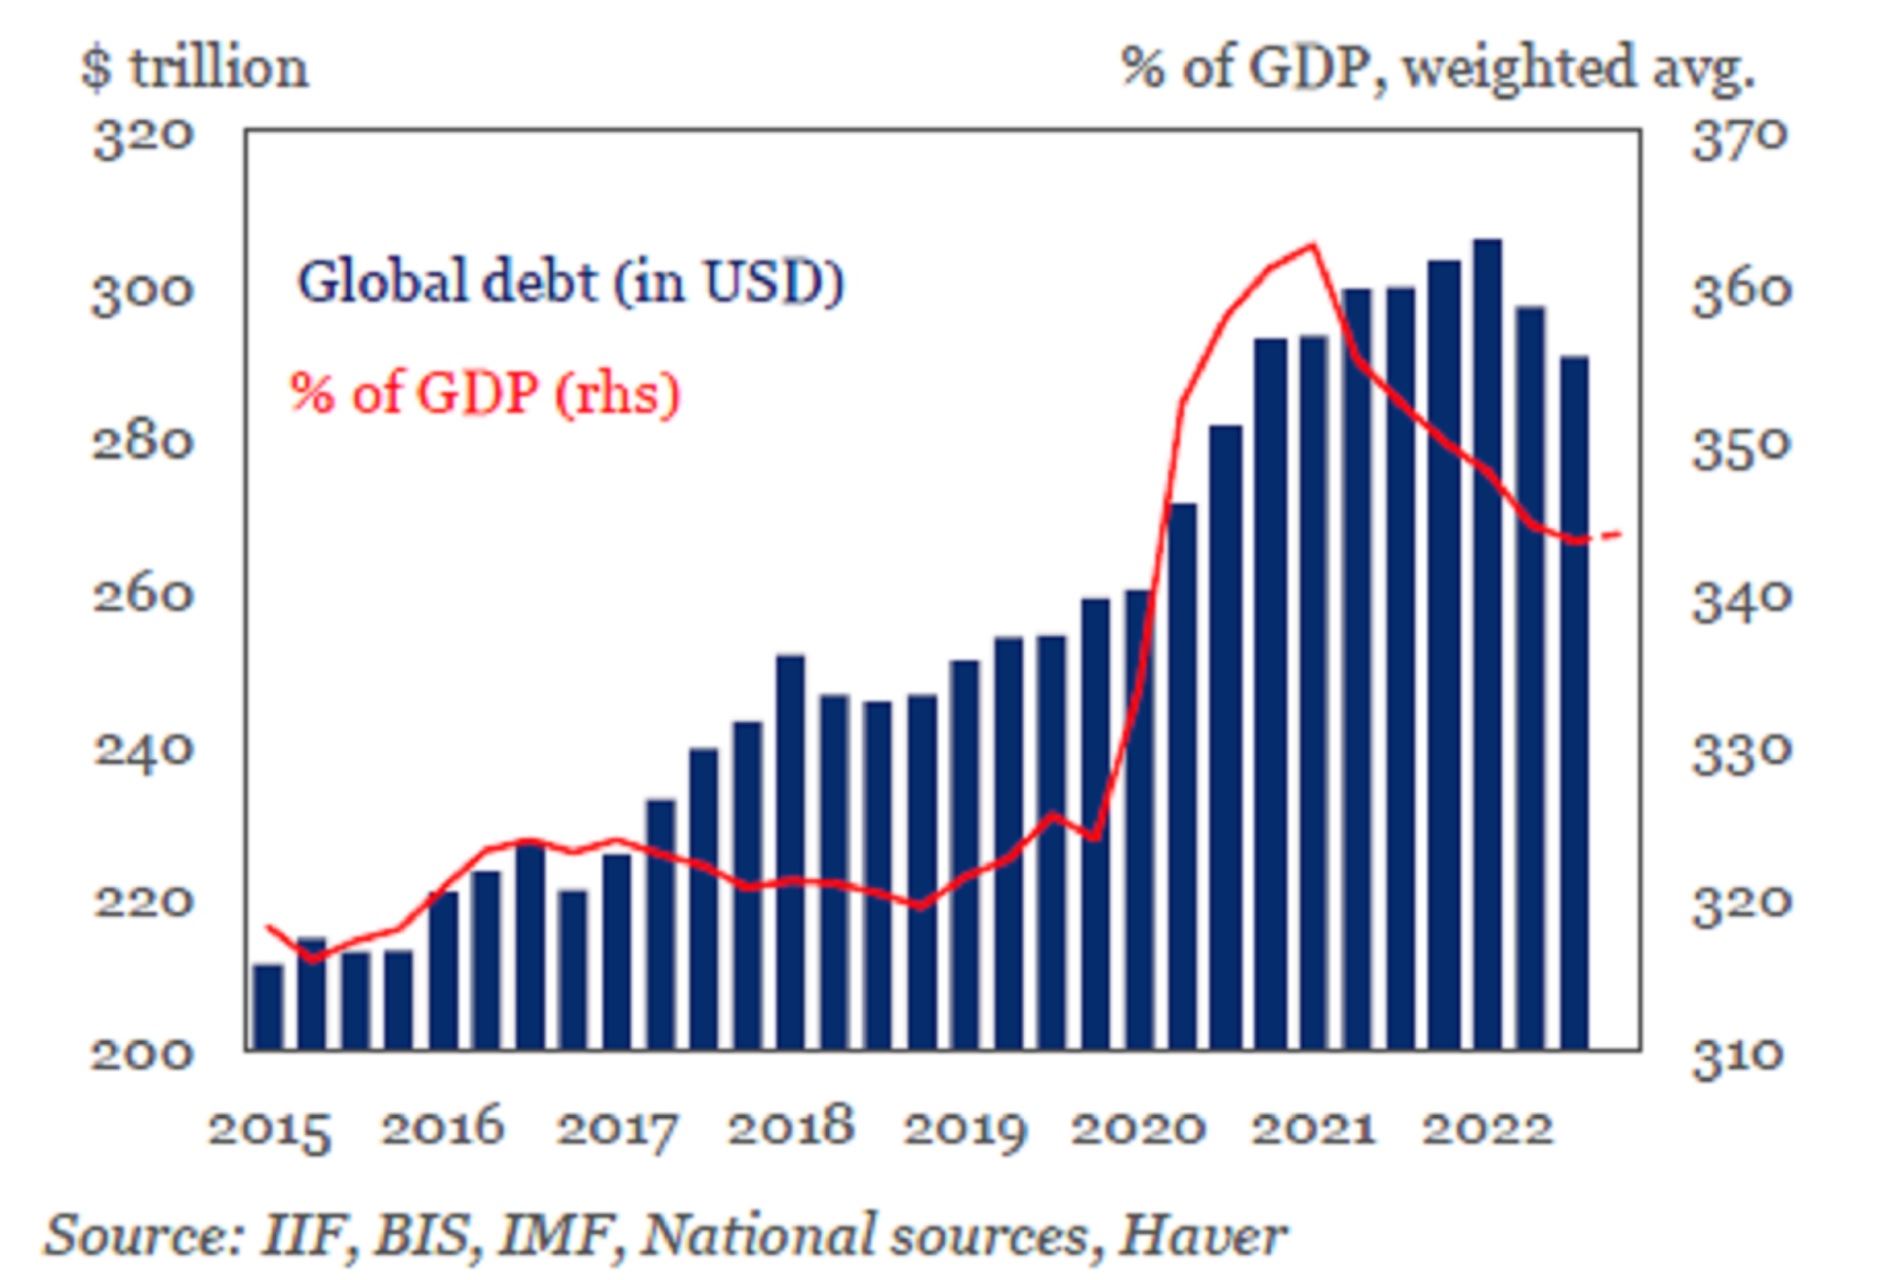 La crescita del debito globale negli ultimi anni